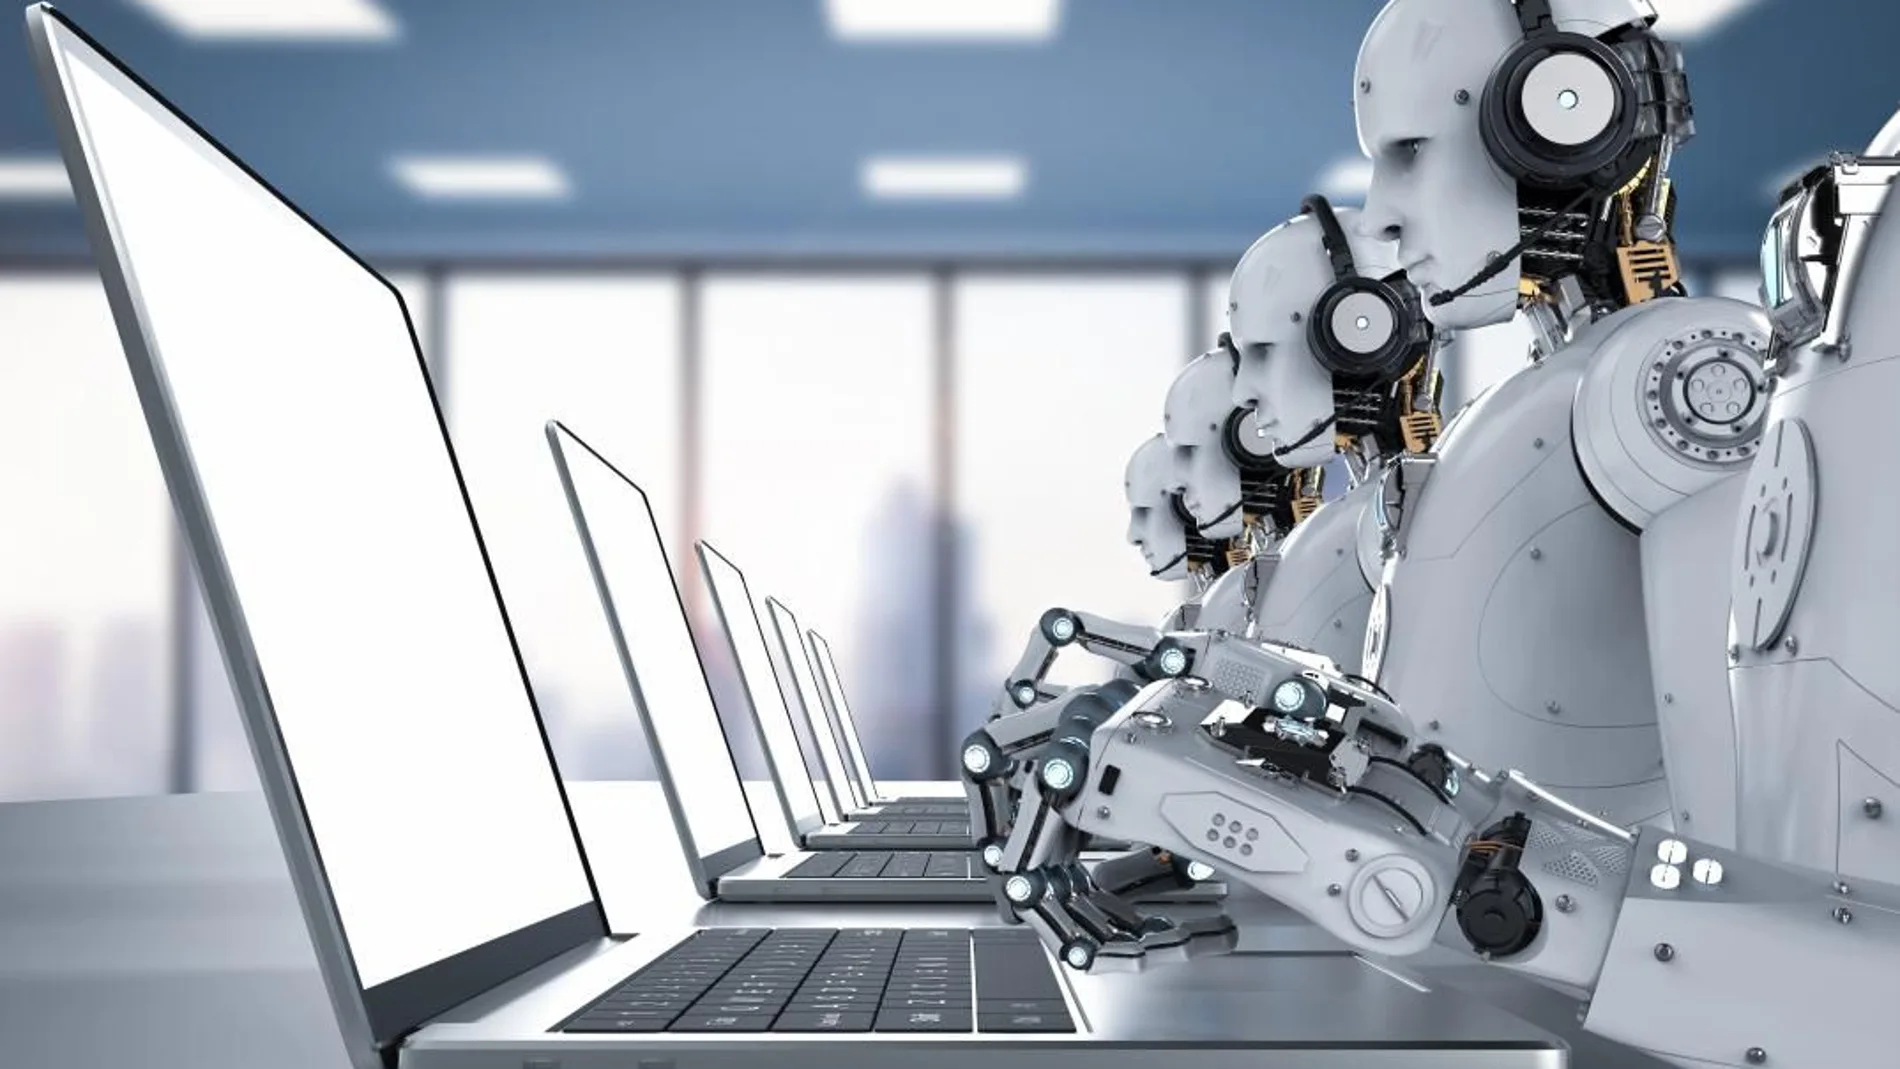 El estudio señala que cada robot nuevo introducido en un área geográfica elimina seis puestos de trabajo humanos en esa misma zona